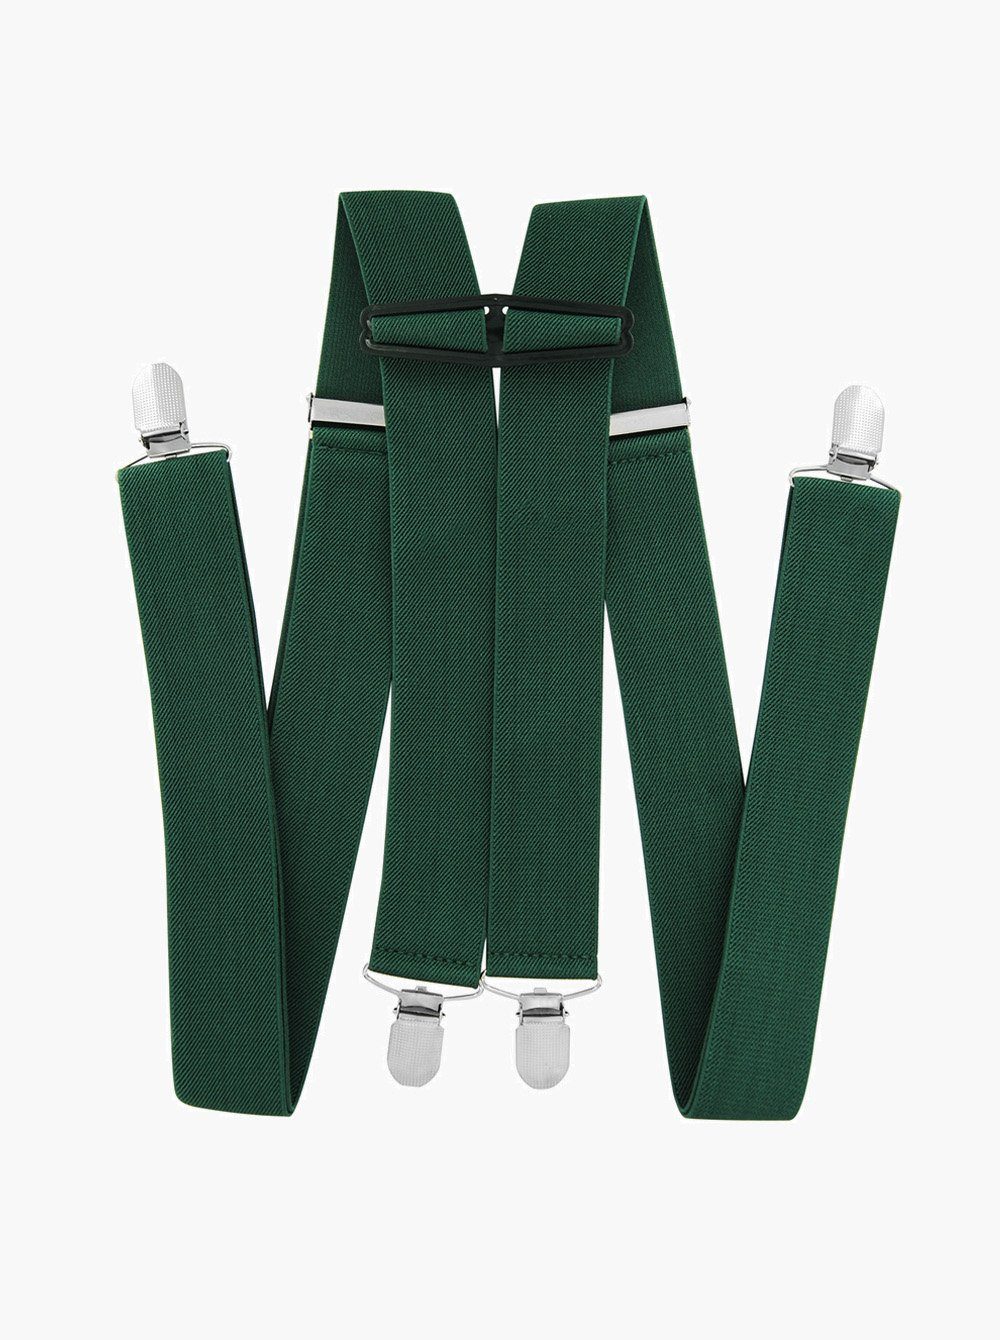 Grün 120cm Herren Hosenträger Hosenträger Breit Lang Stabile und 4 Clips einfarbig axy 3,5cm elastisch H-Form verstellbar